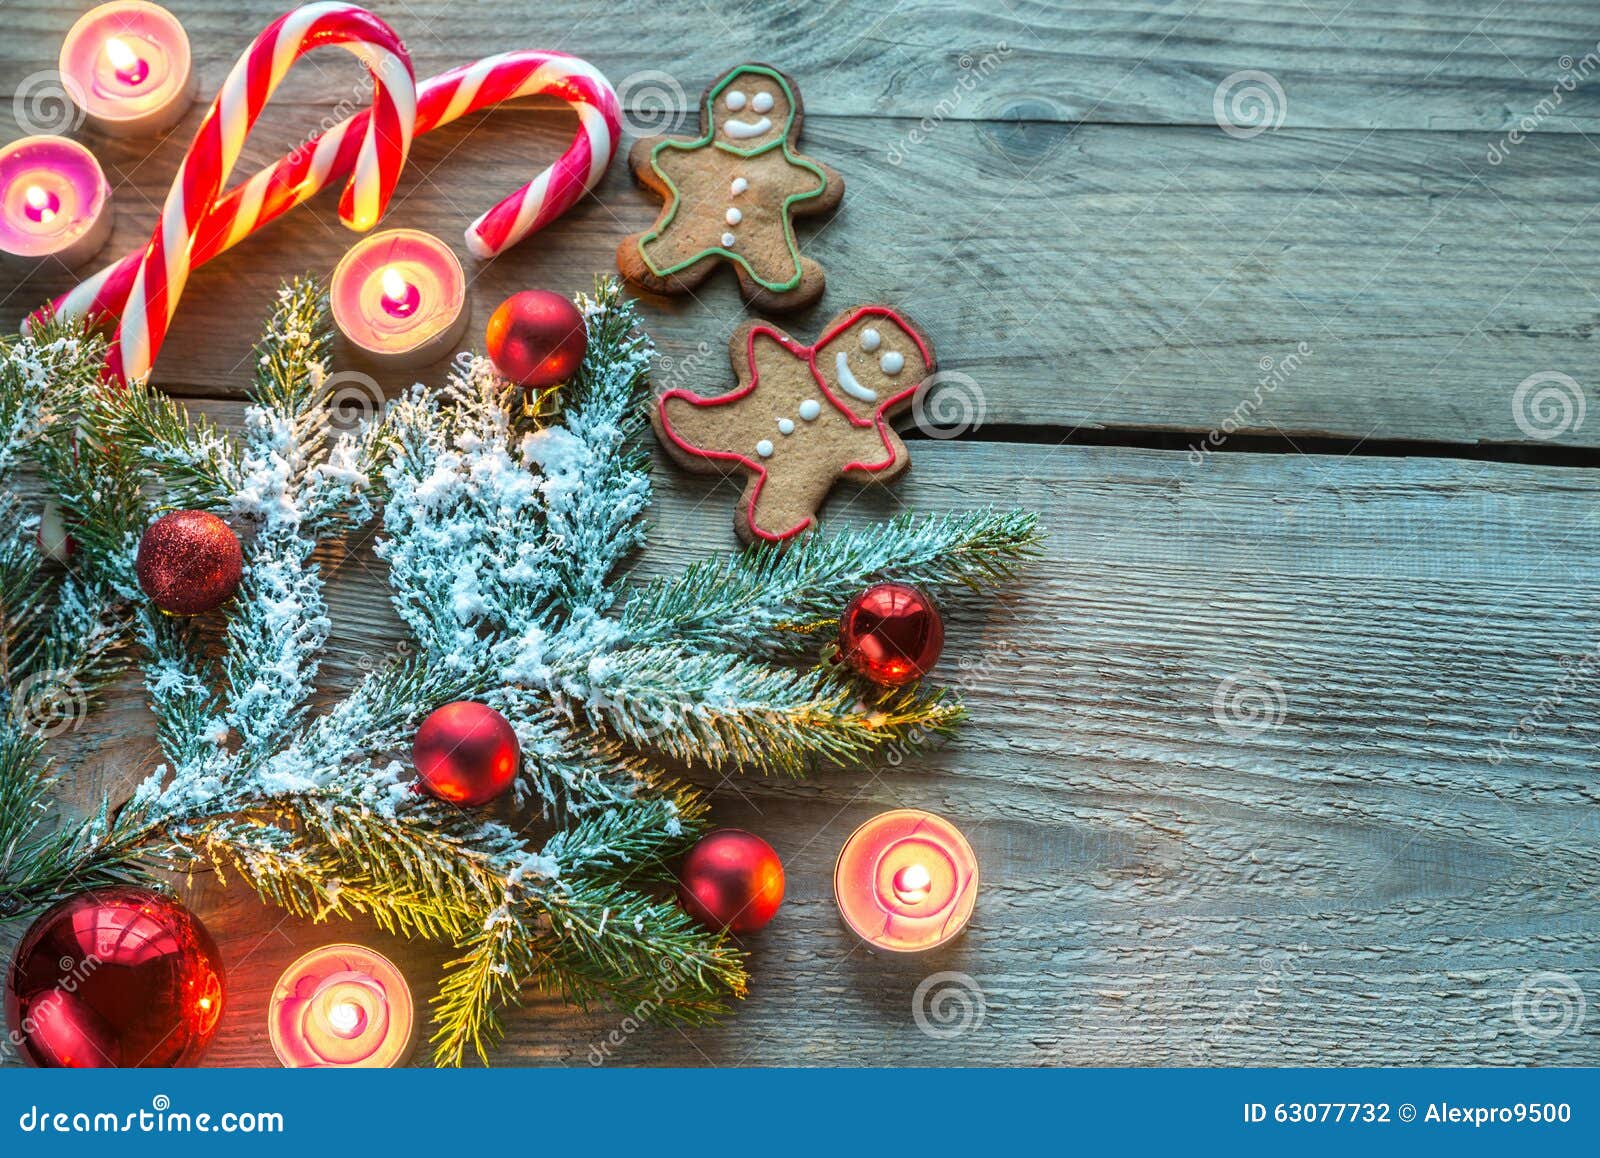 Albero Di Natale Decorato Con Biscotti.Ramo Decorato Dell Albero Di Natale Con I Biscotti E Le Caramelle Fotografia Stock Immagine Di Cedro Natale 63077732